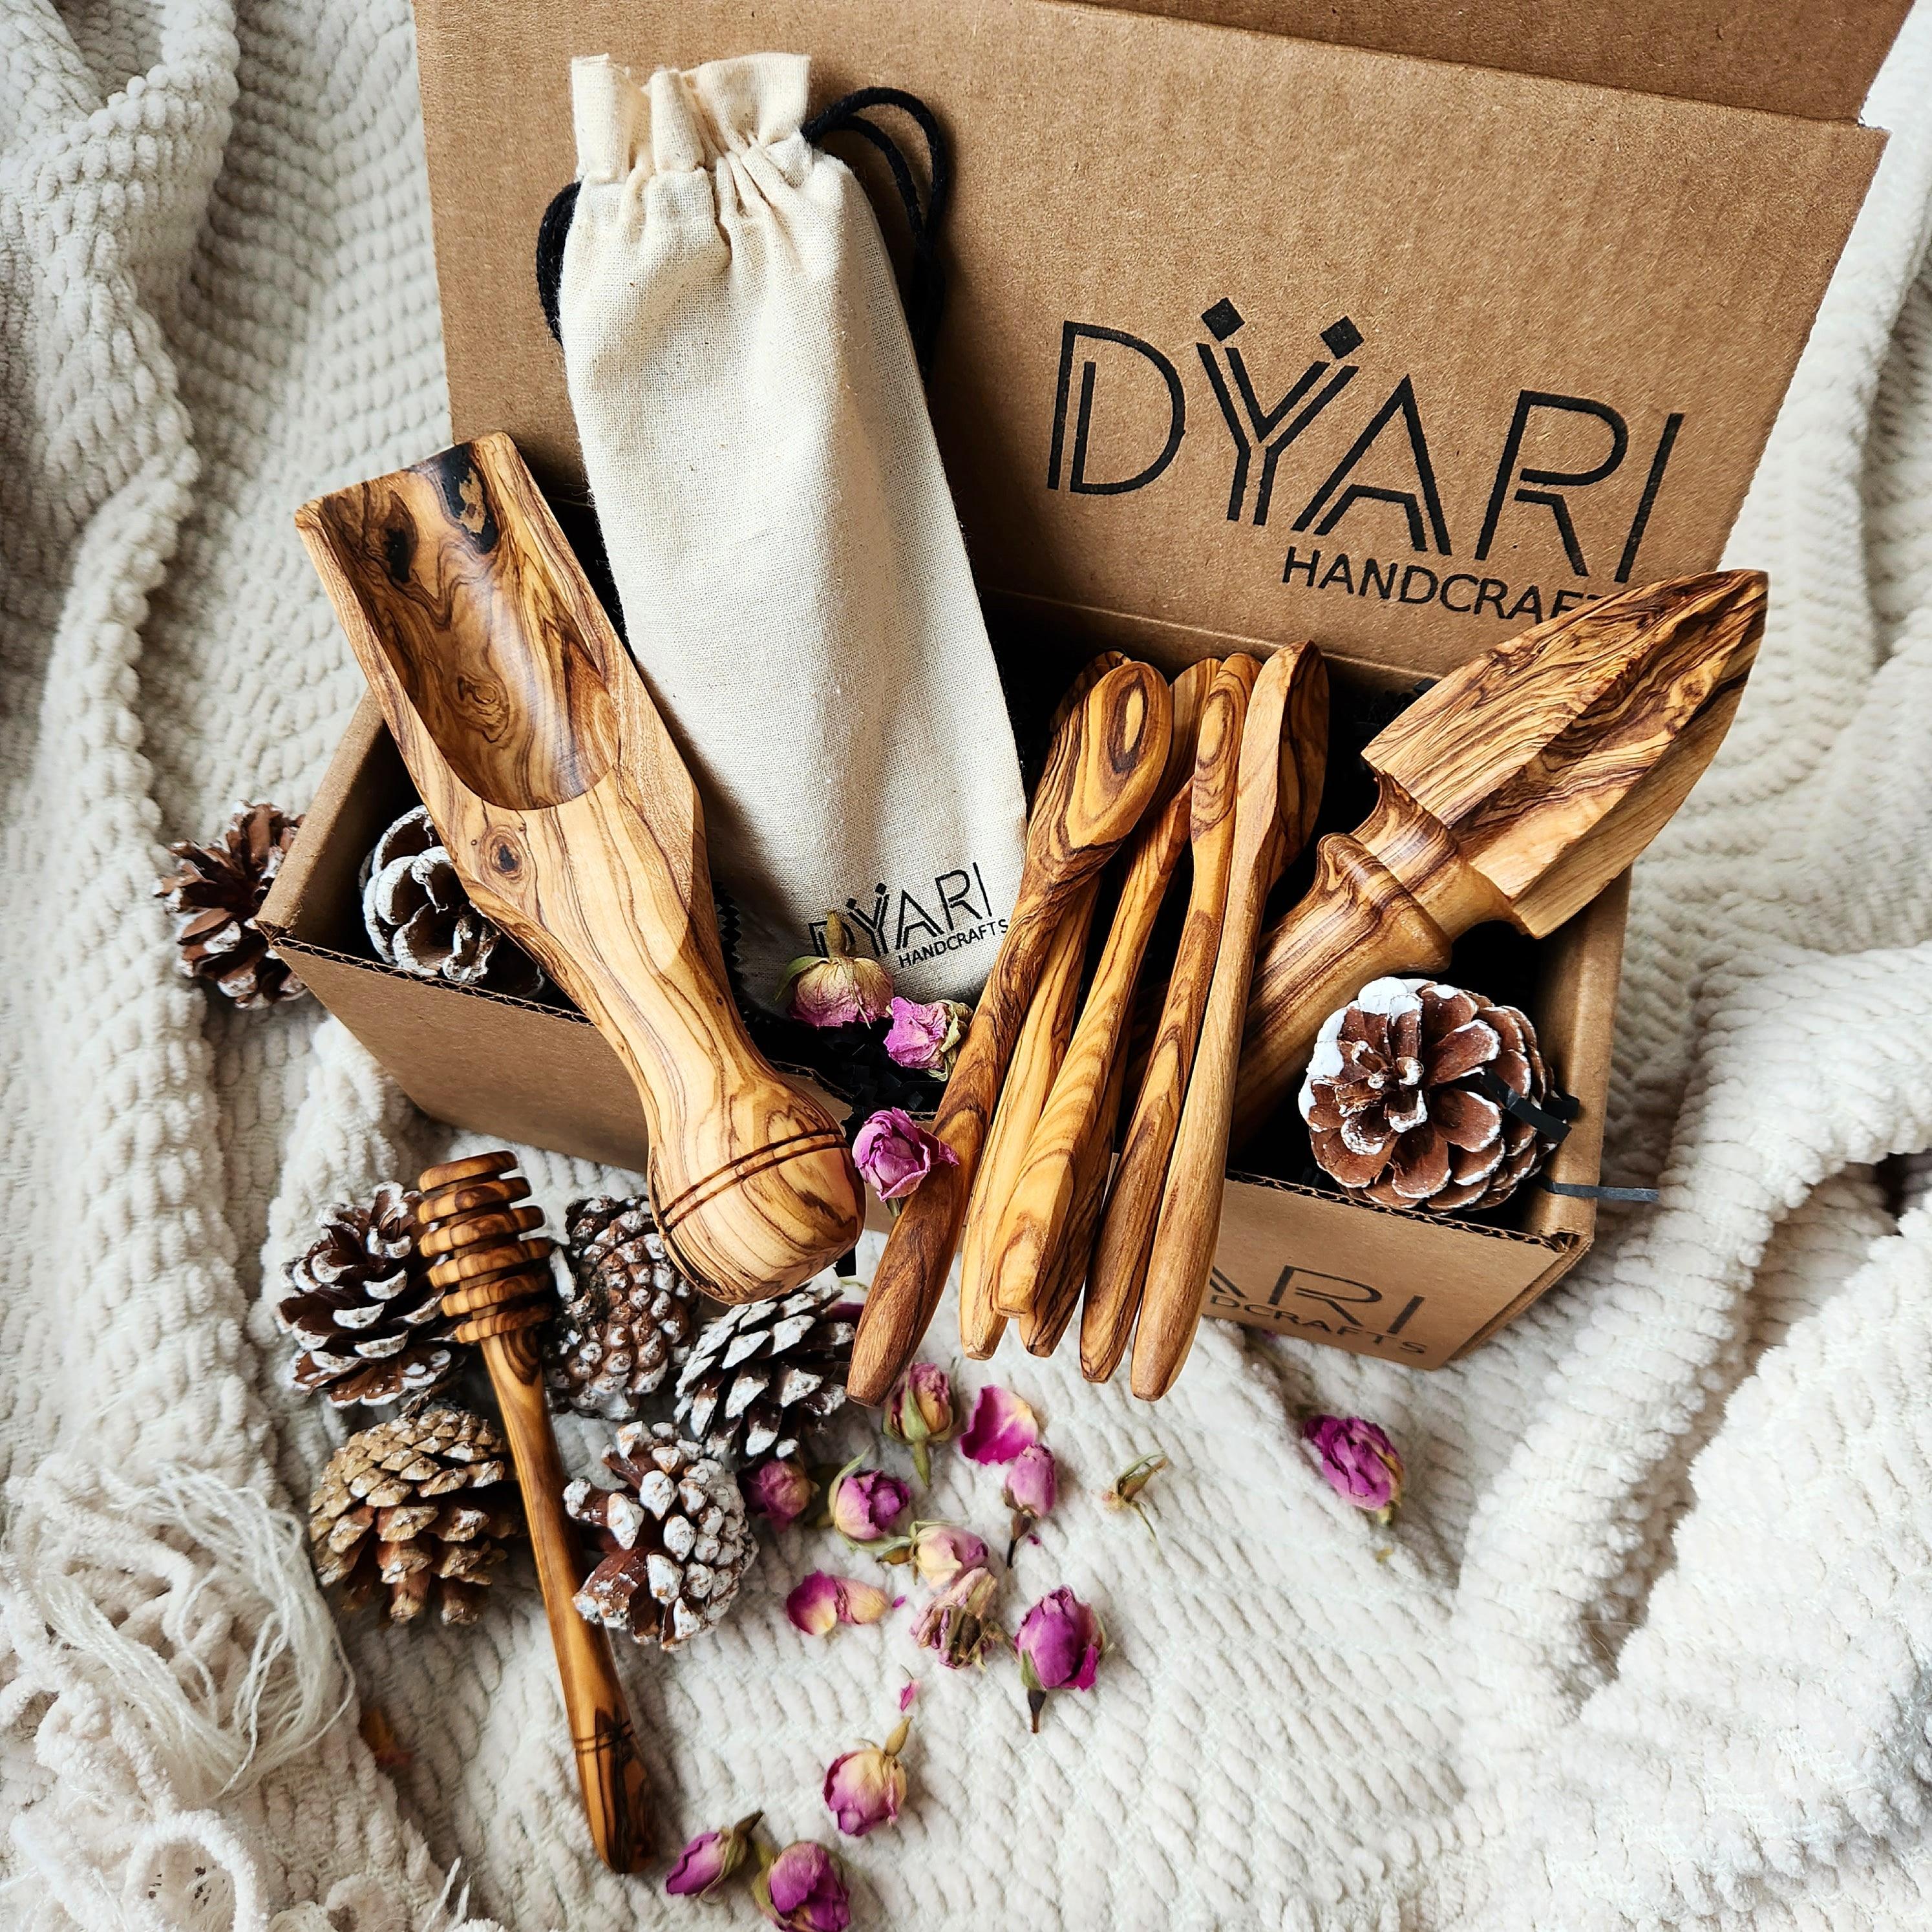 http://dyarihandcrafts.com/cdn/shop/products/essentials-gift-box-dyarihandcrafts-1.jpg?v=1668195626